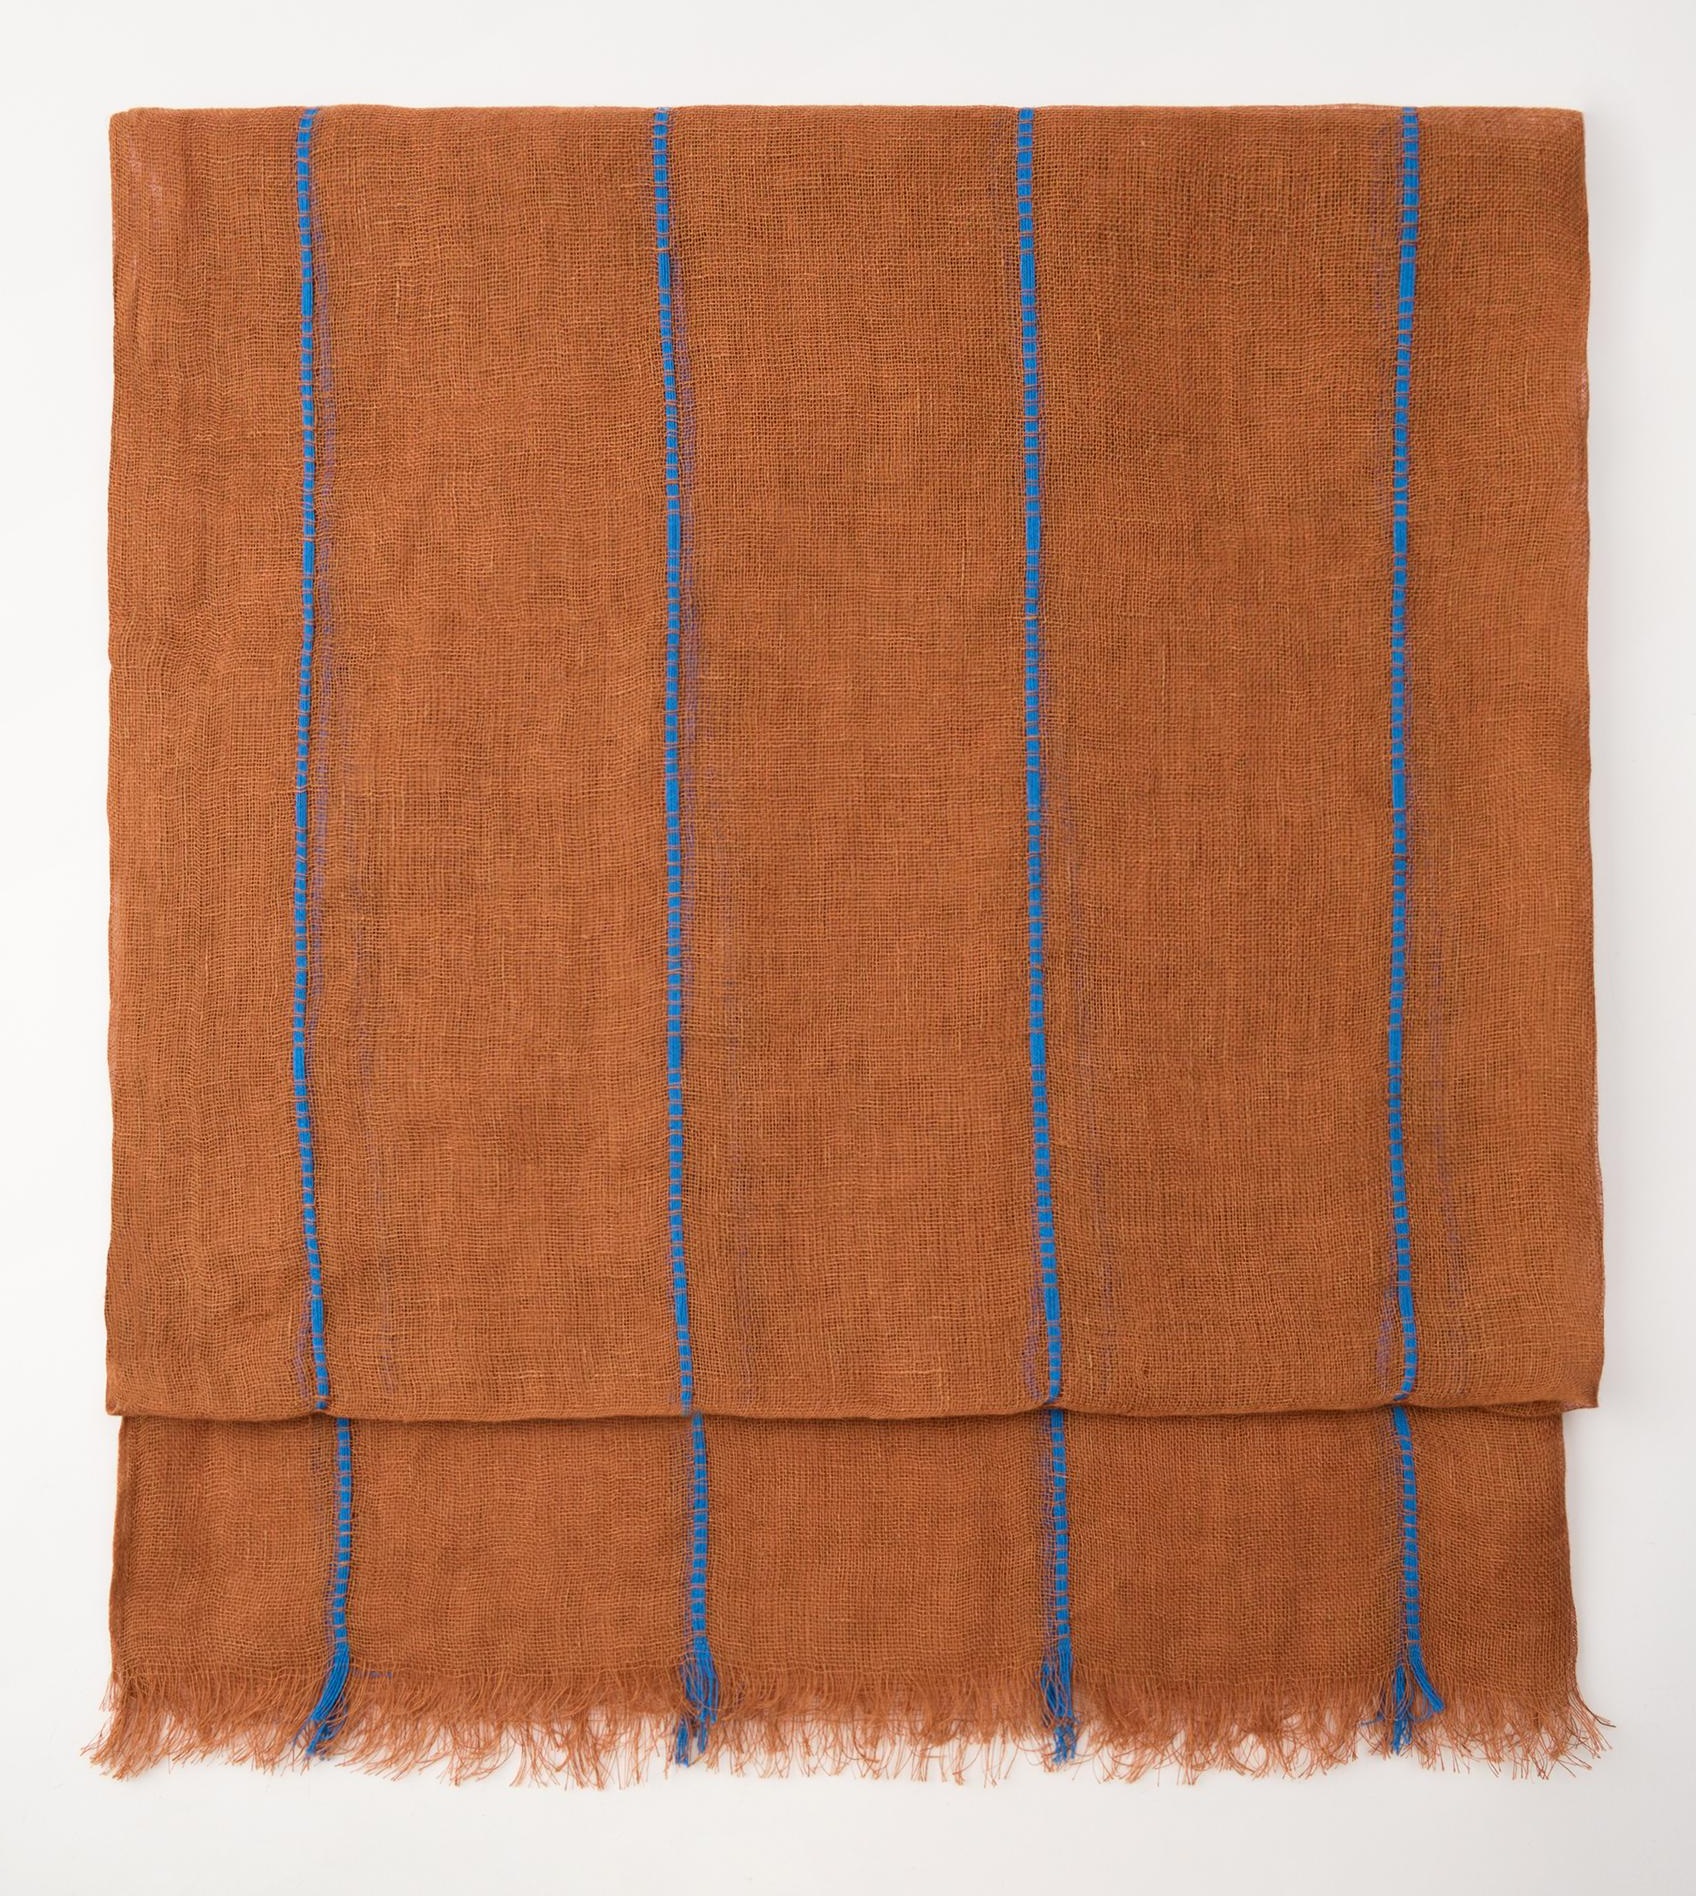 Шарф Zara Striped 100% Linen, коричневый шарф в клетку zara коричневый